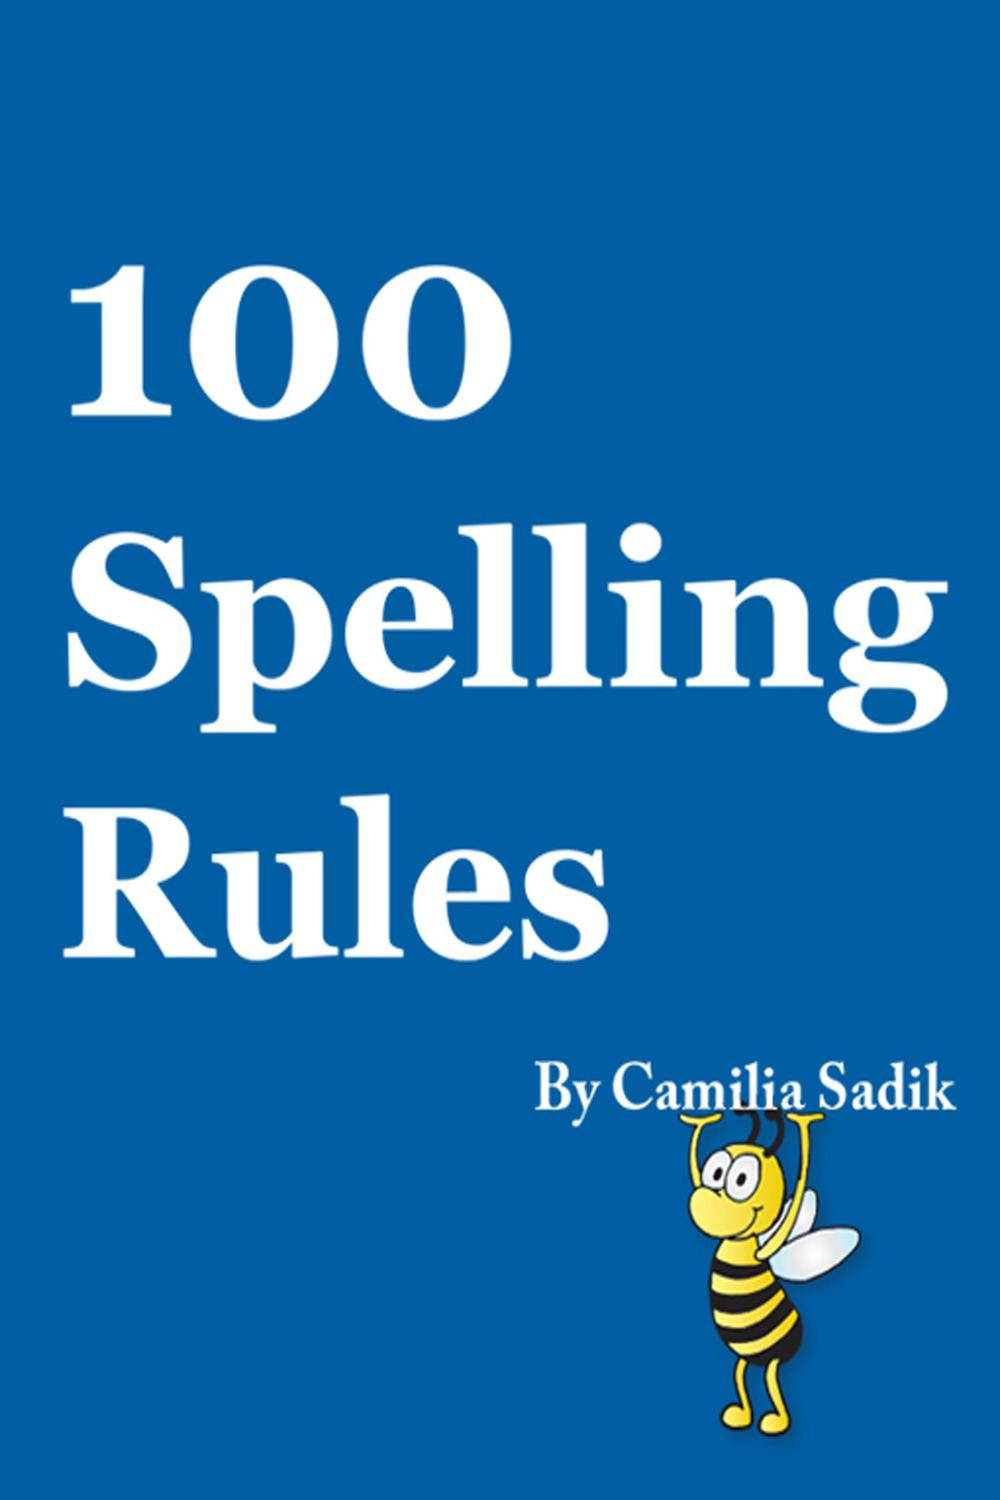 100 Spelling Rules - Camilia Sadik